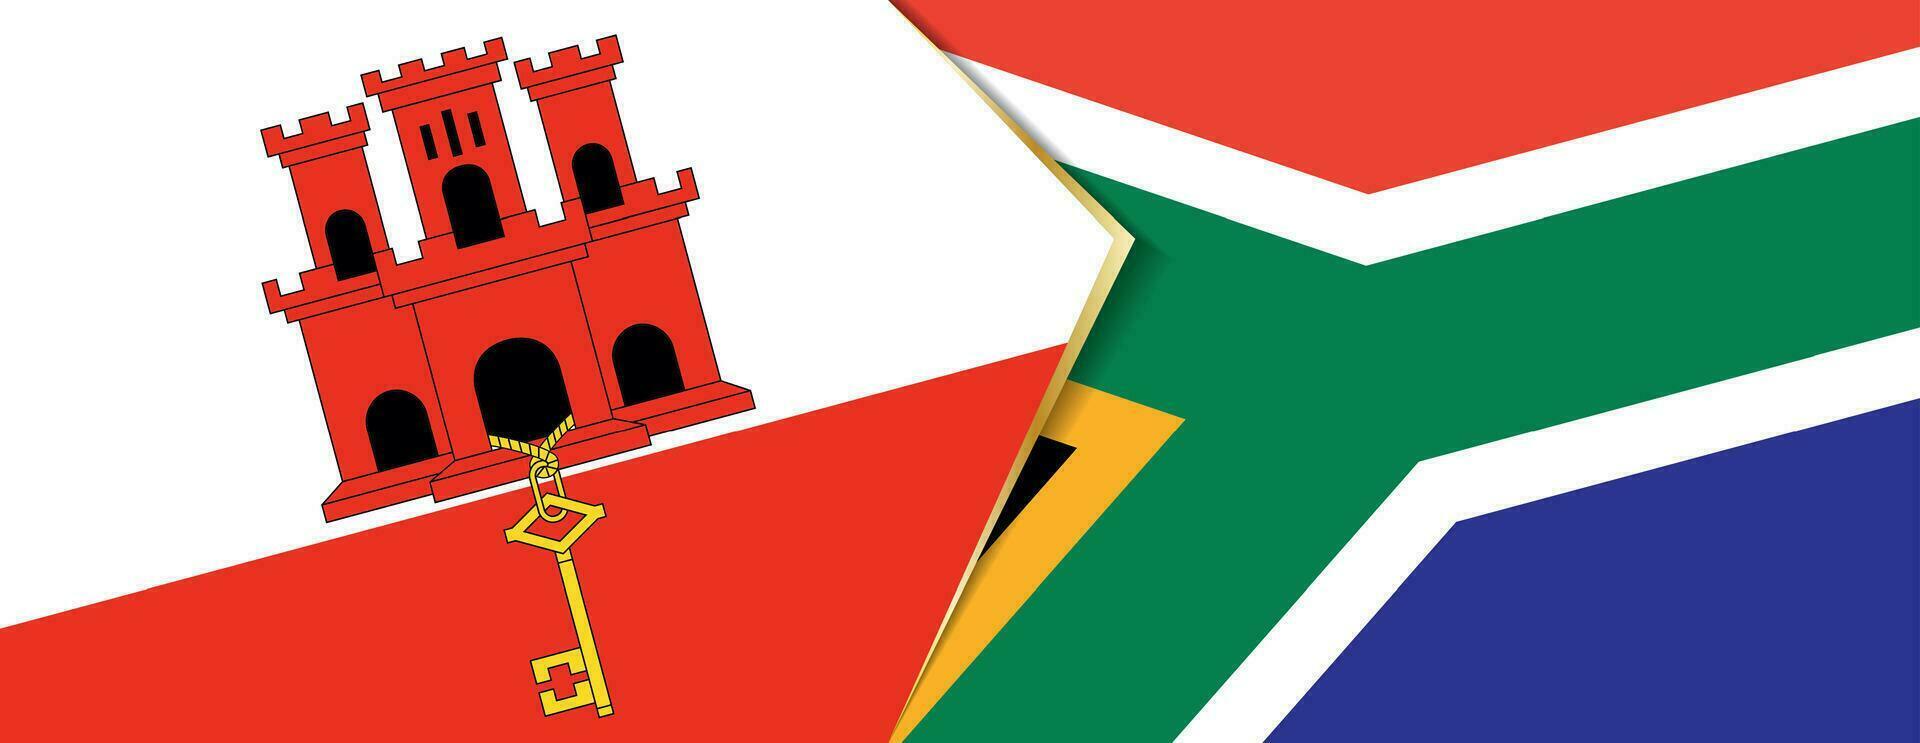 gibraltar och söder afrika flaggor, två vektor flaggor.